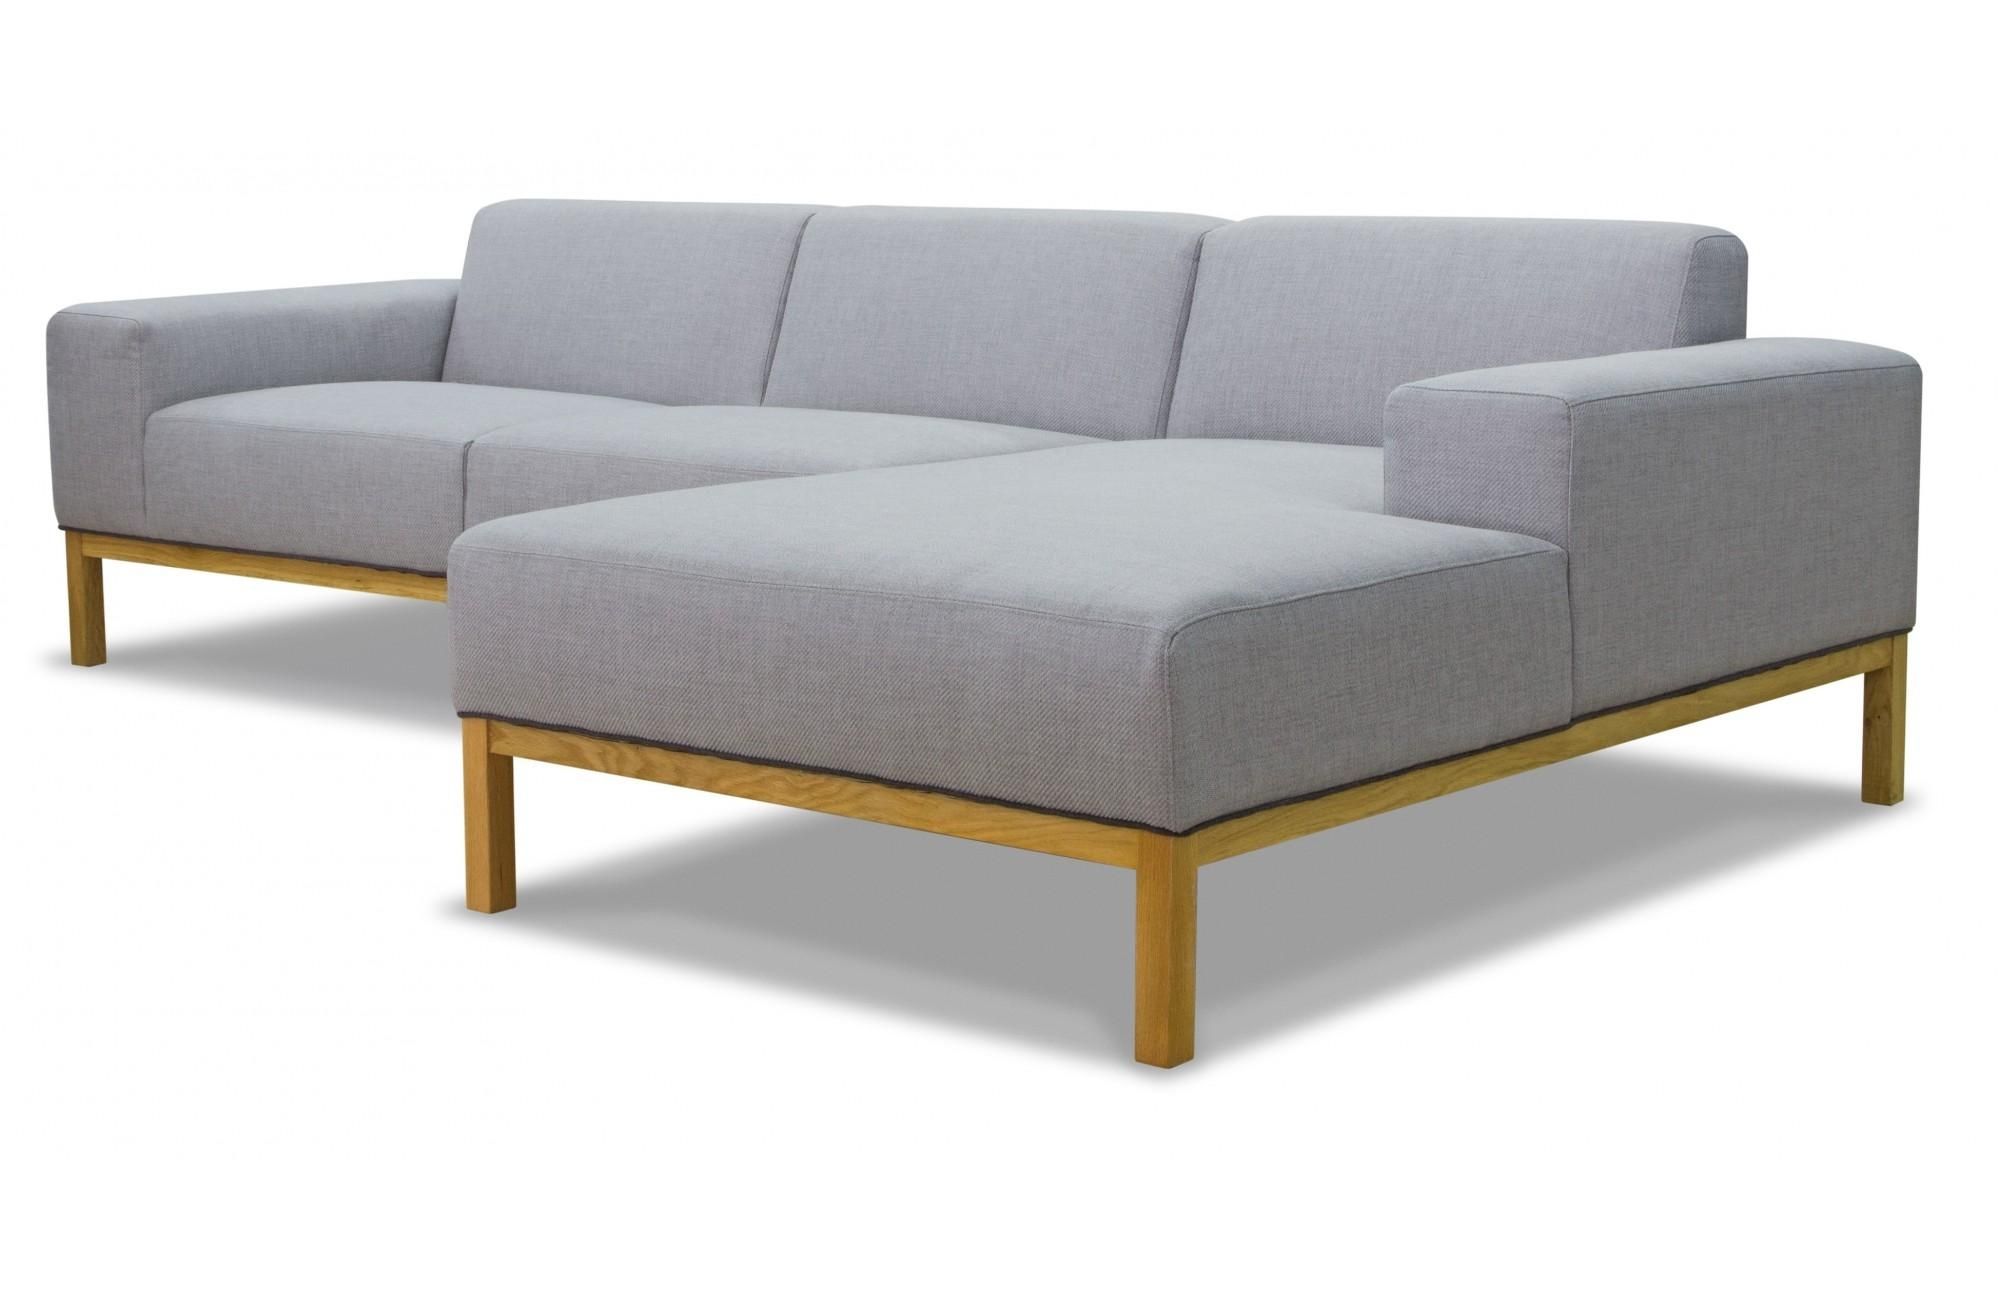 Buy Union Black Leather Modular Corner Sofas At Furniture Choice Regarding Modular Corner Sofas (View 3 of 20)